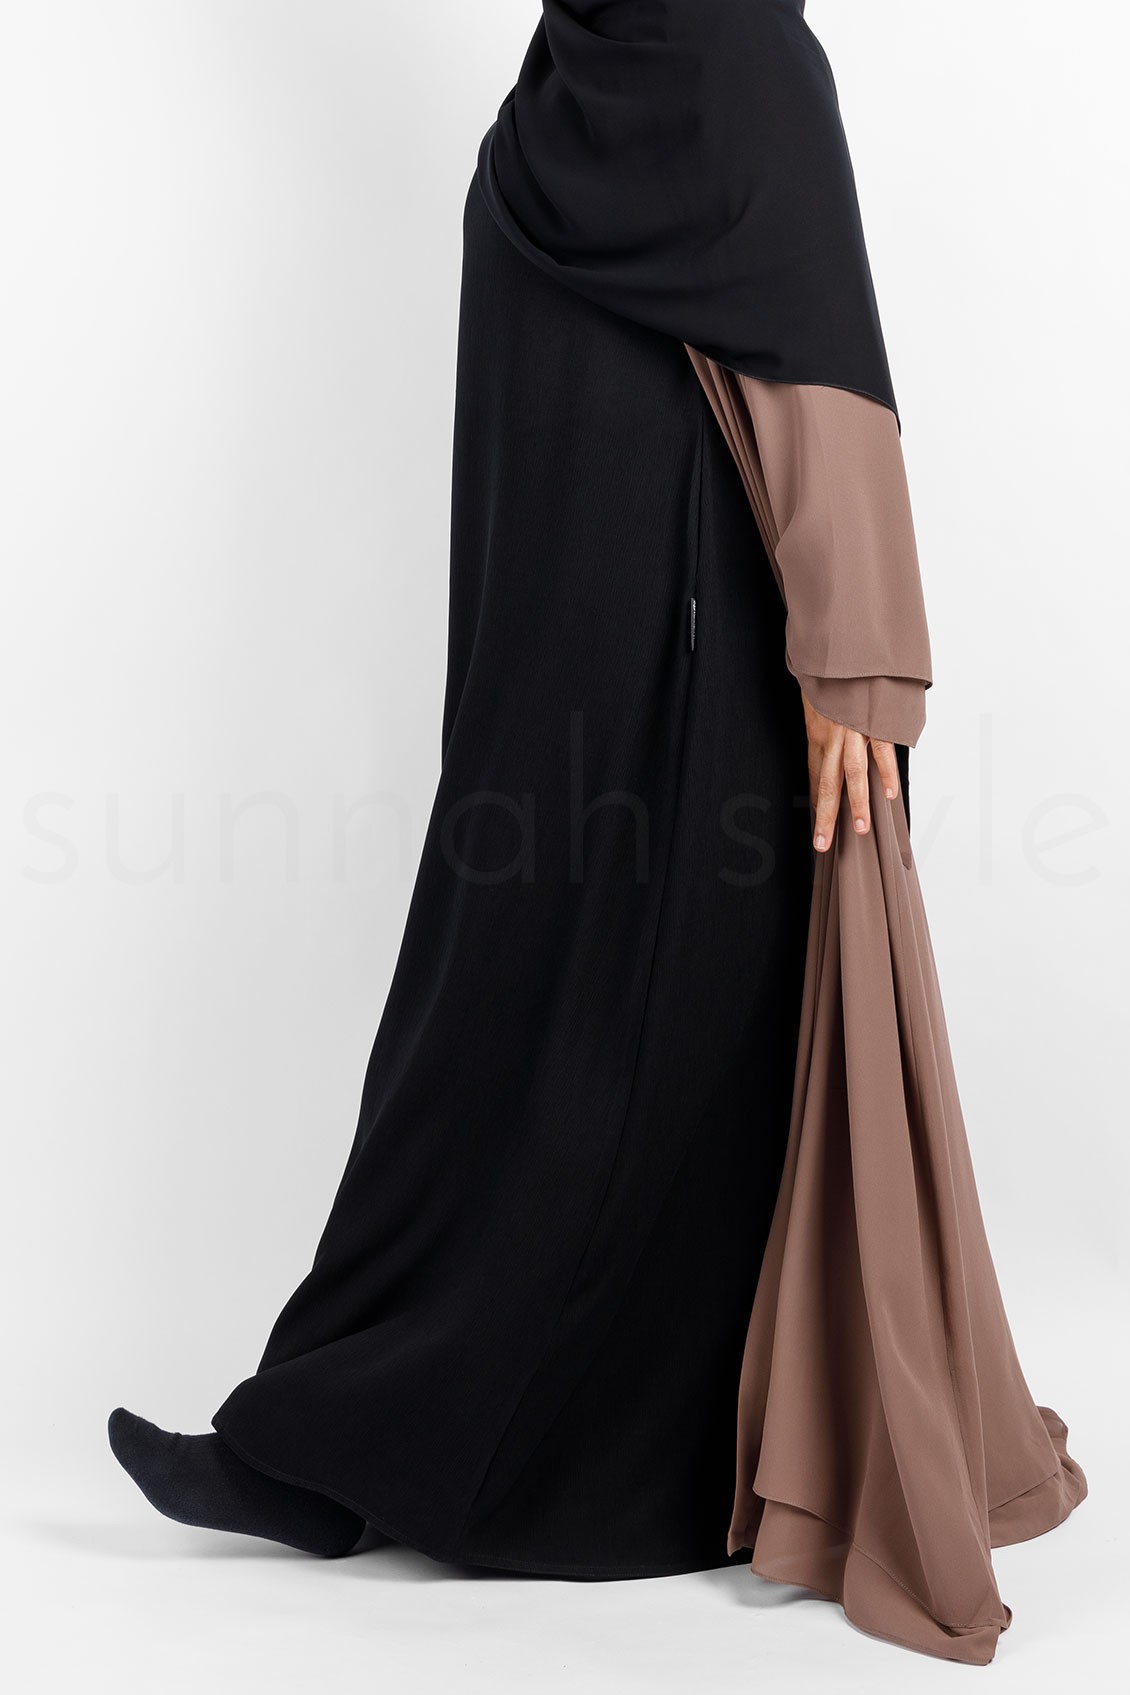 Sunnah Style Brushed Sleeveless Abaya Black